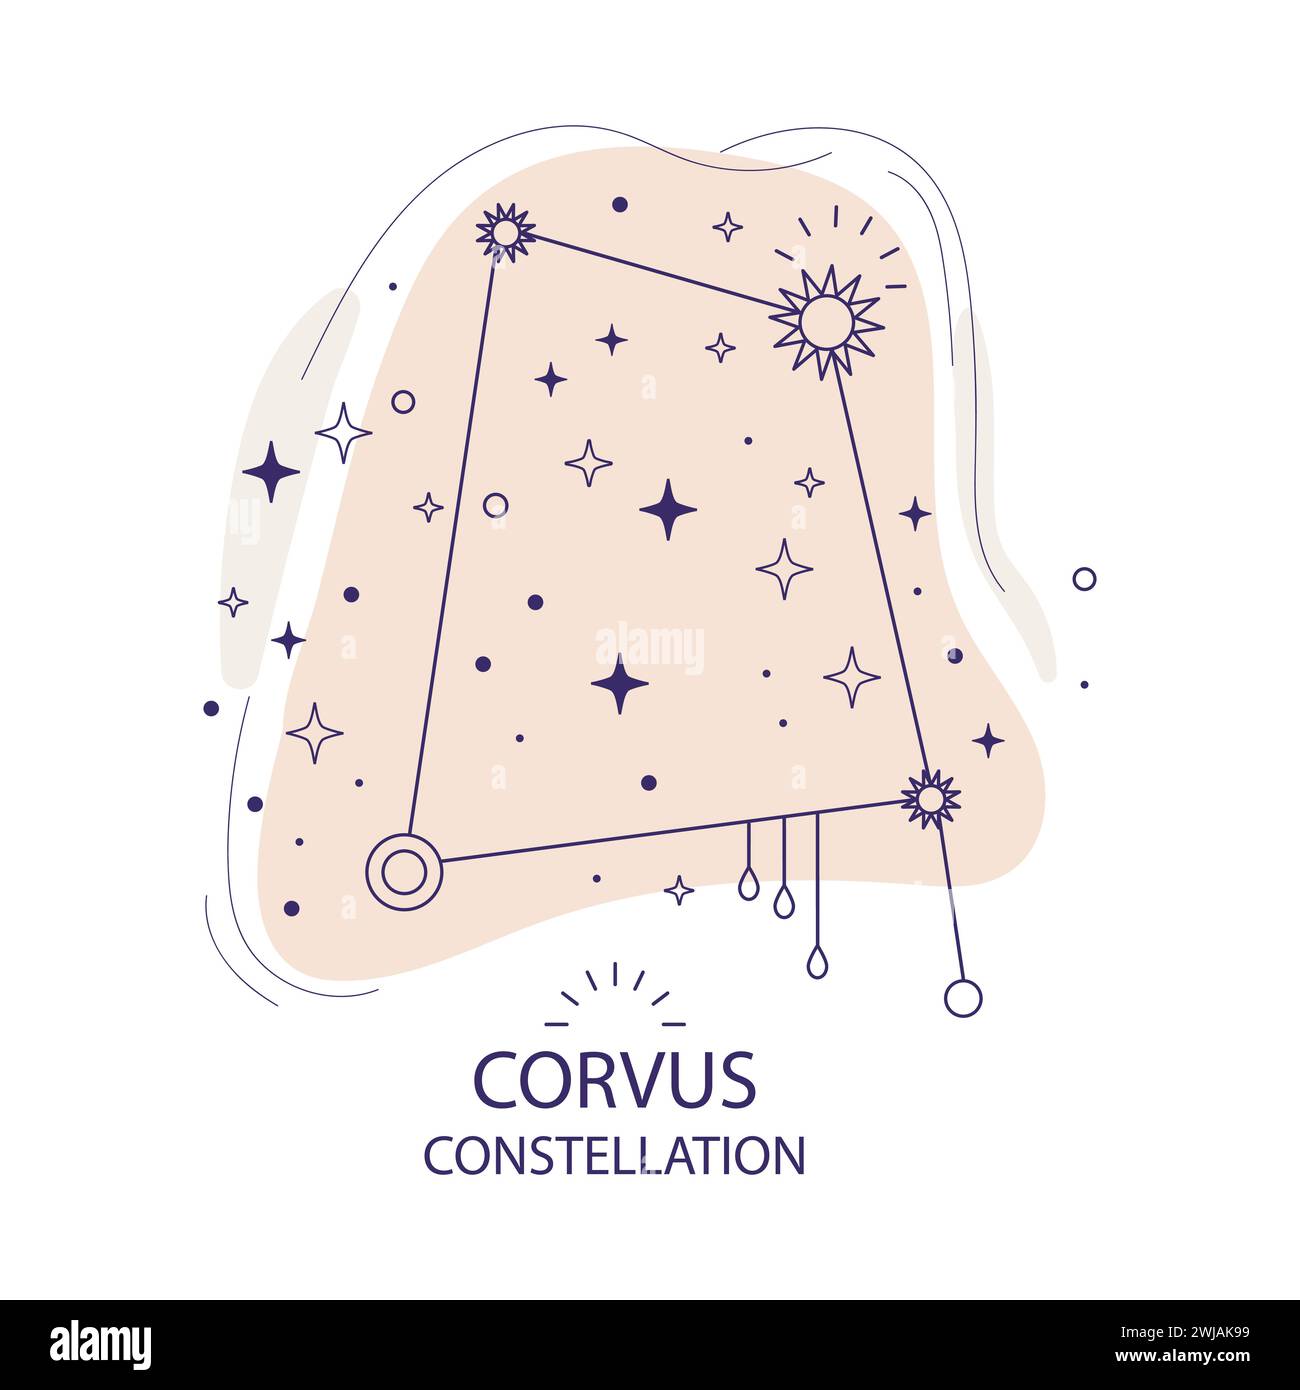 Estrella constelación Corvus ilustración vectorial Ilustración del Vector